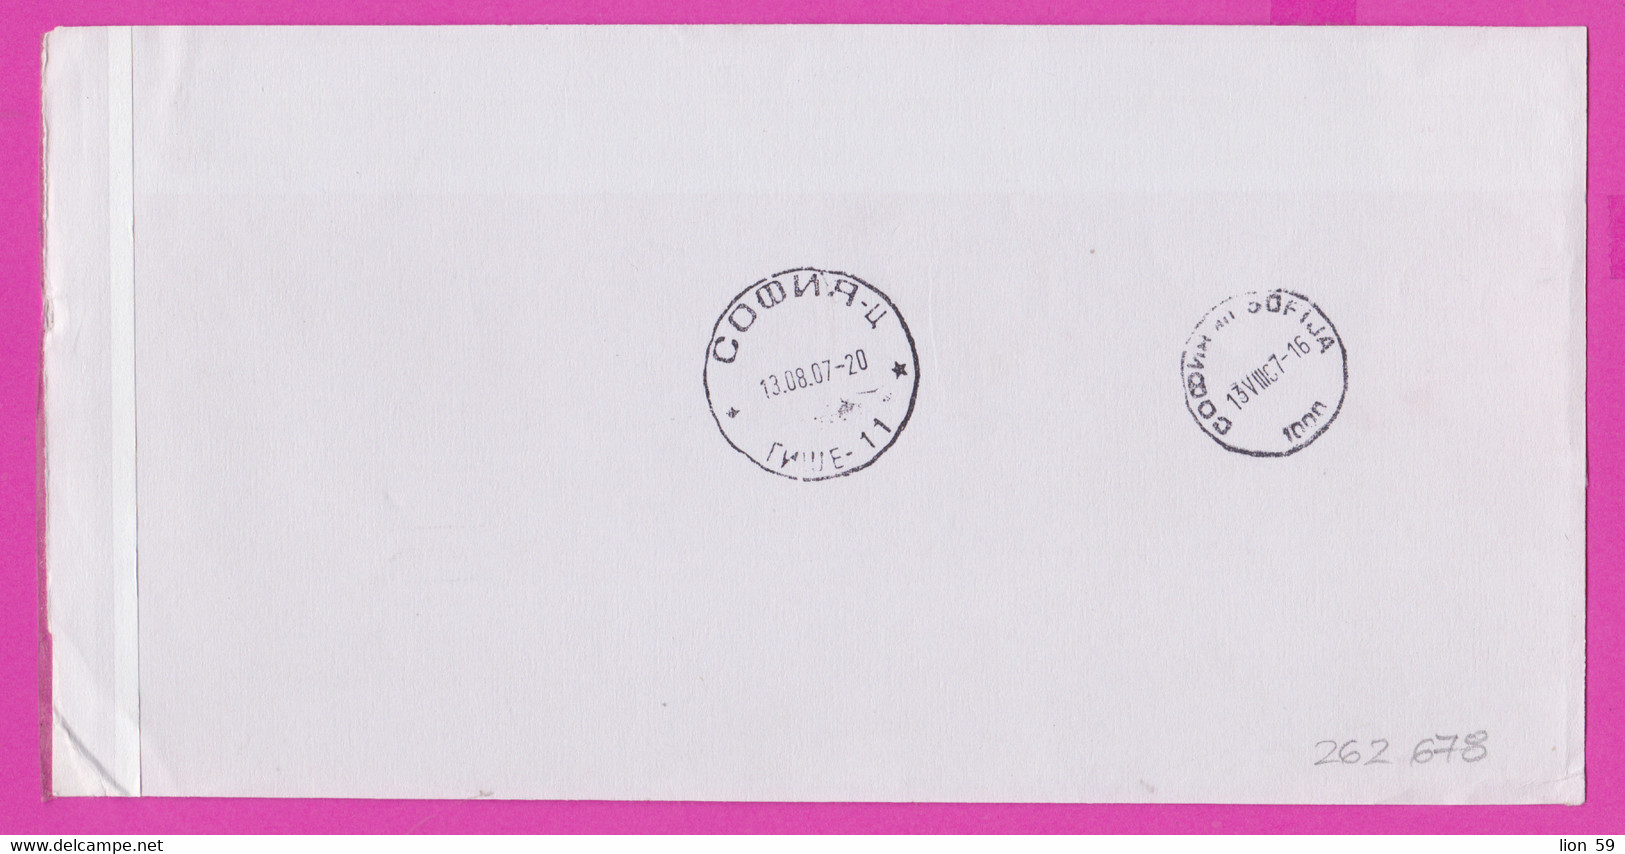 262678 / Form CN 07 Bulgaria 2007 Sofia - Netherlands - AVIS De Réception /de Livraison /de Paiement/ D'inscription - Briefe U. Dokumente